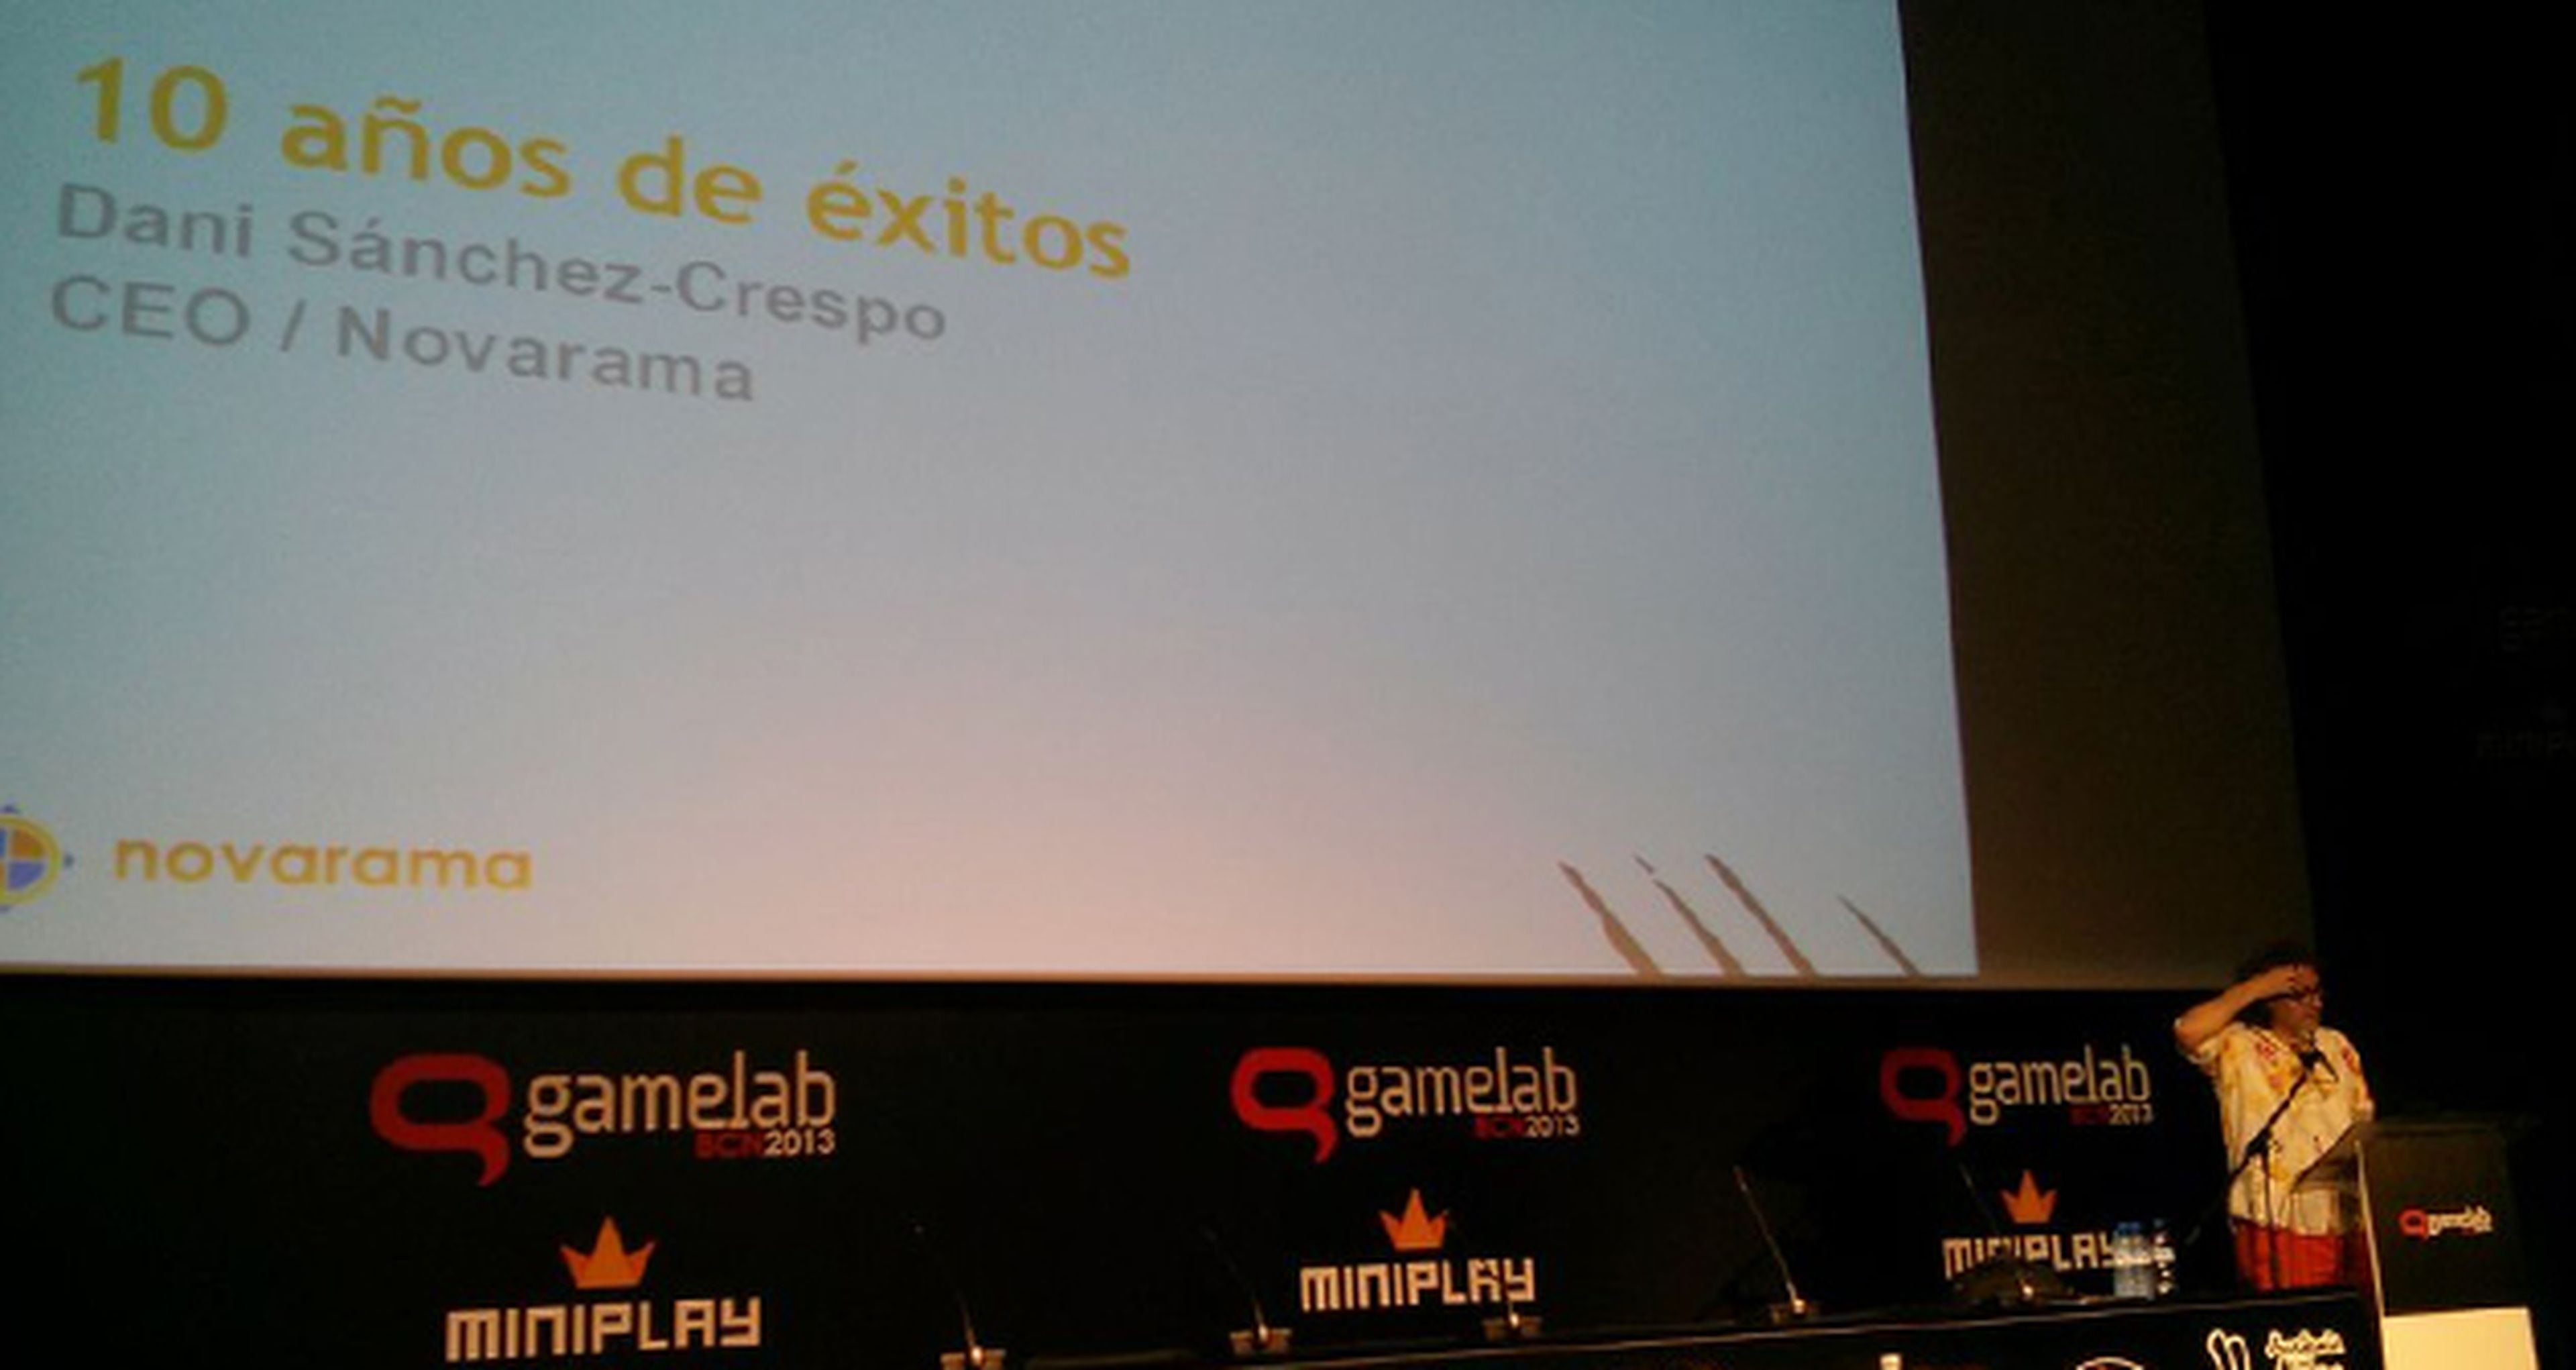 Gamelab 2013: 10 años de éxito en Novarama